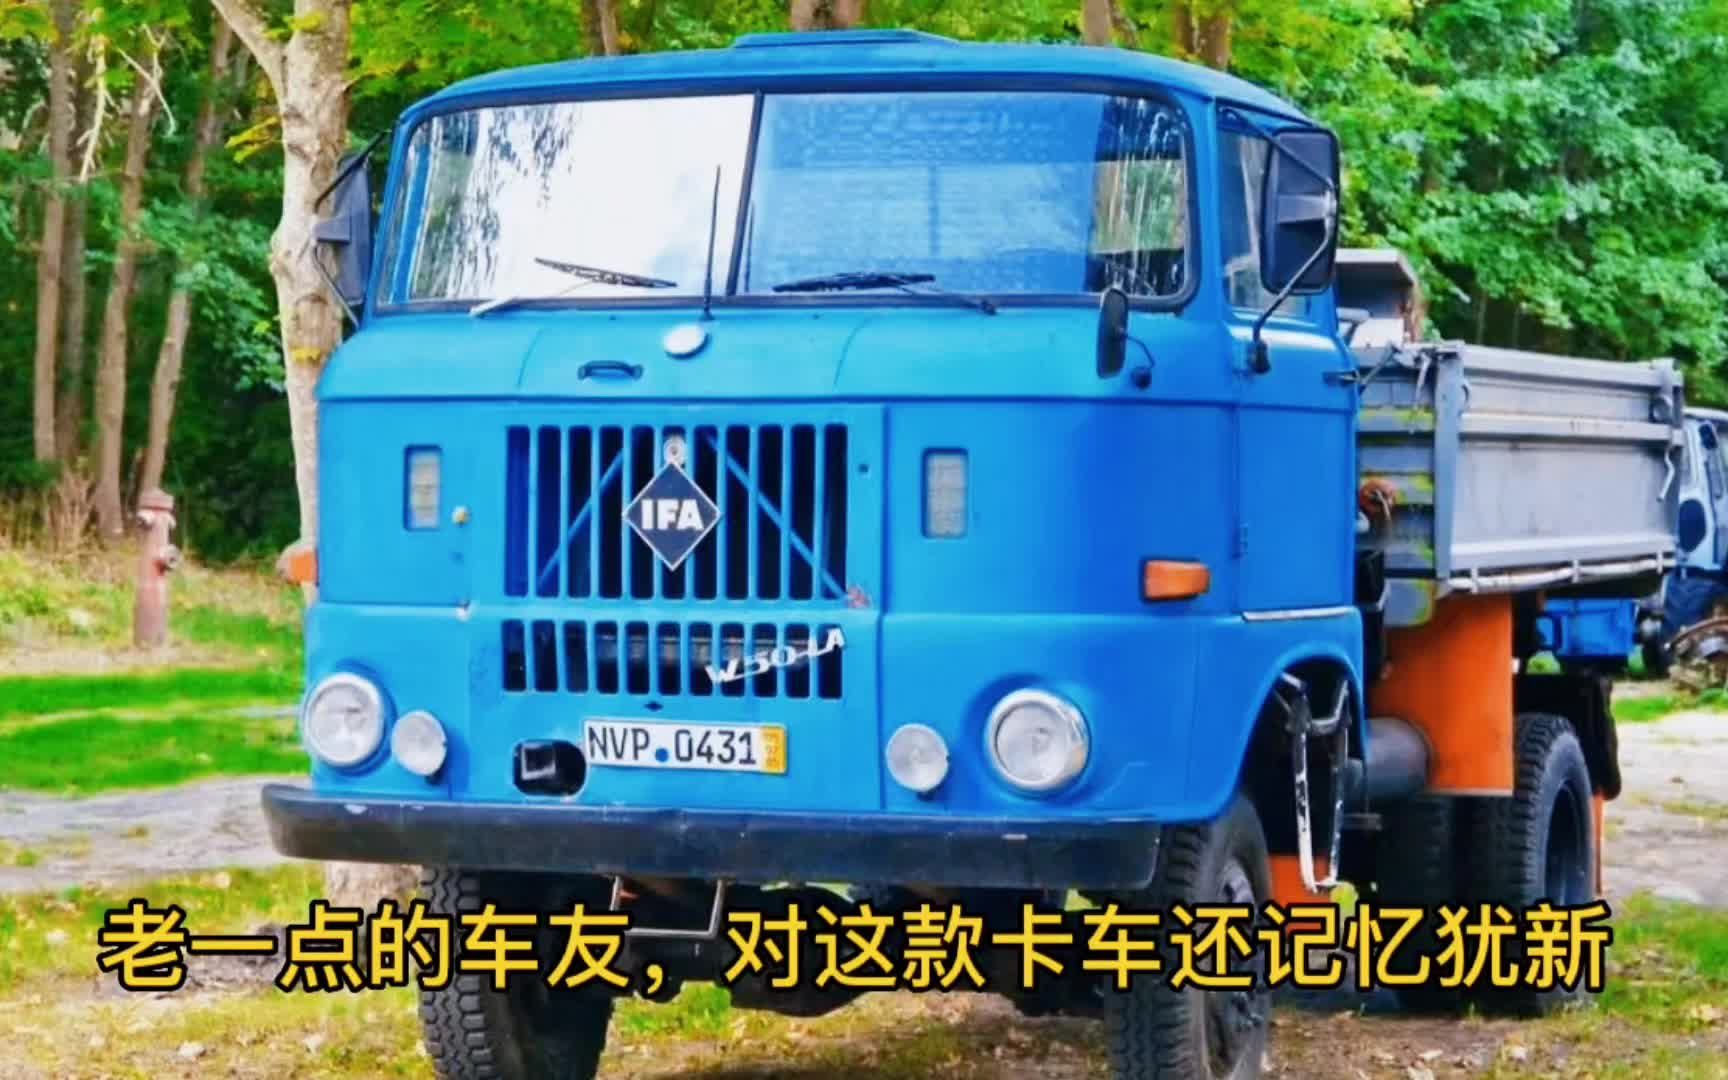 这种进口原东德的卡车就是依发w50型卡车